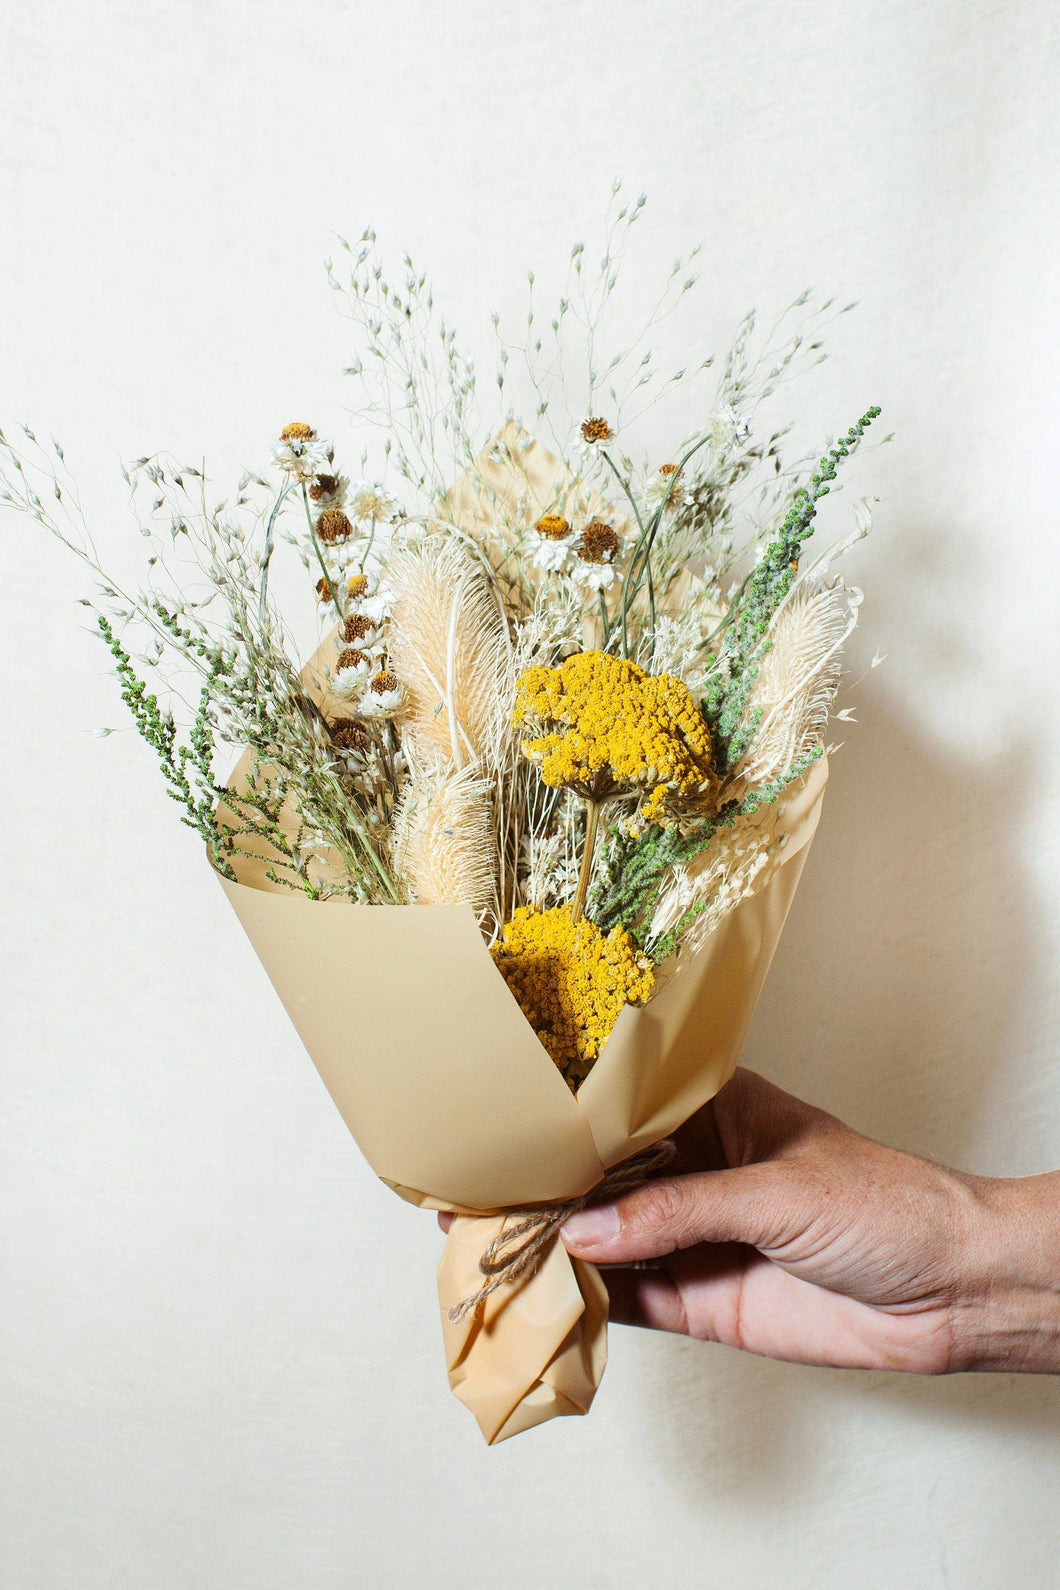 Idlewild Floral Co. - Citrine Petite Bouquet